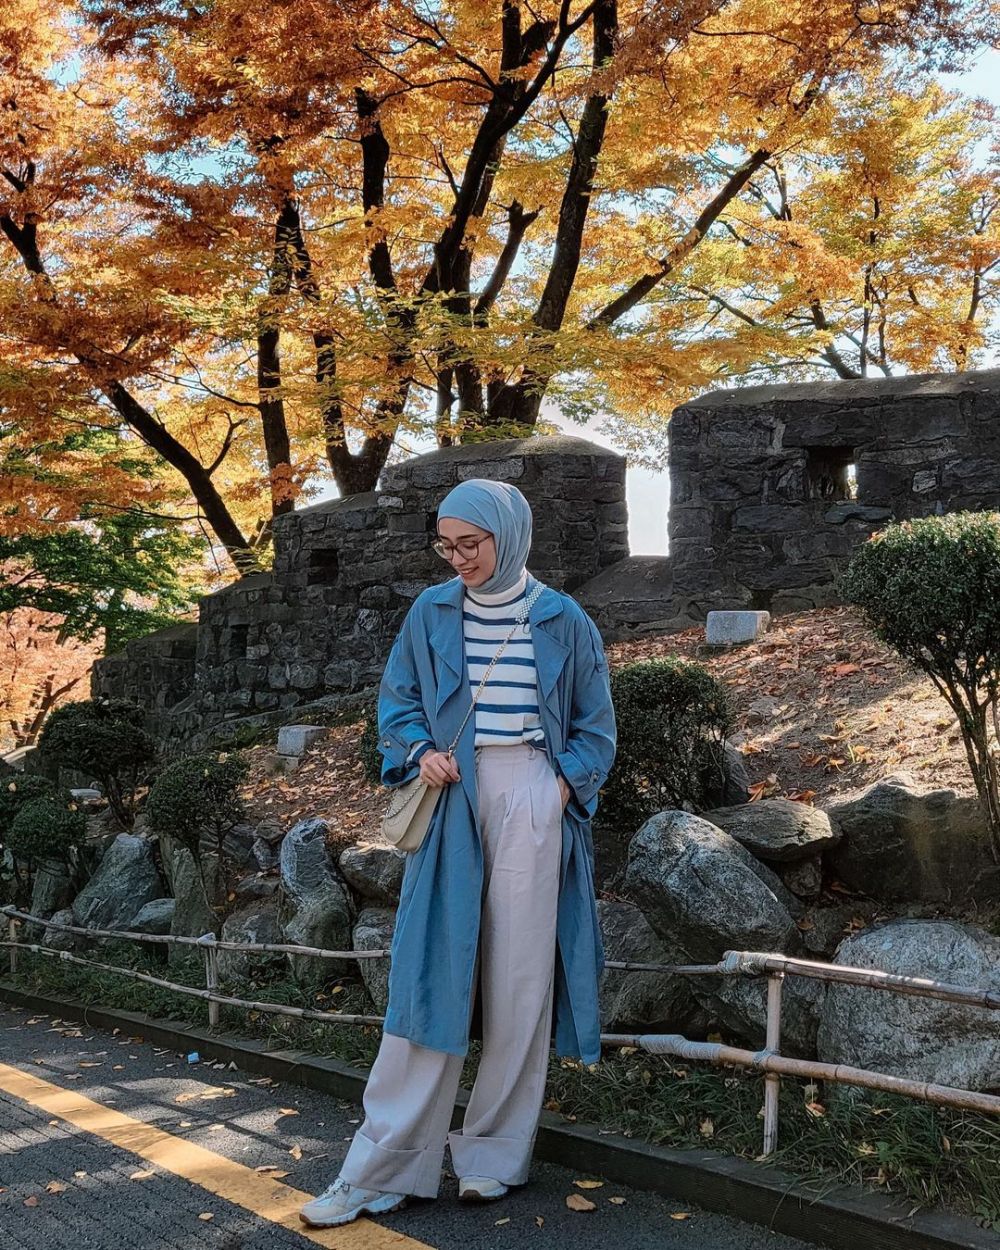 9 Inspirasi OOTD Hijab untuk Traveling ke Korea Selatan ala Selebgram